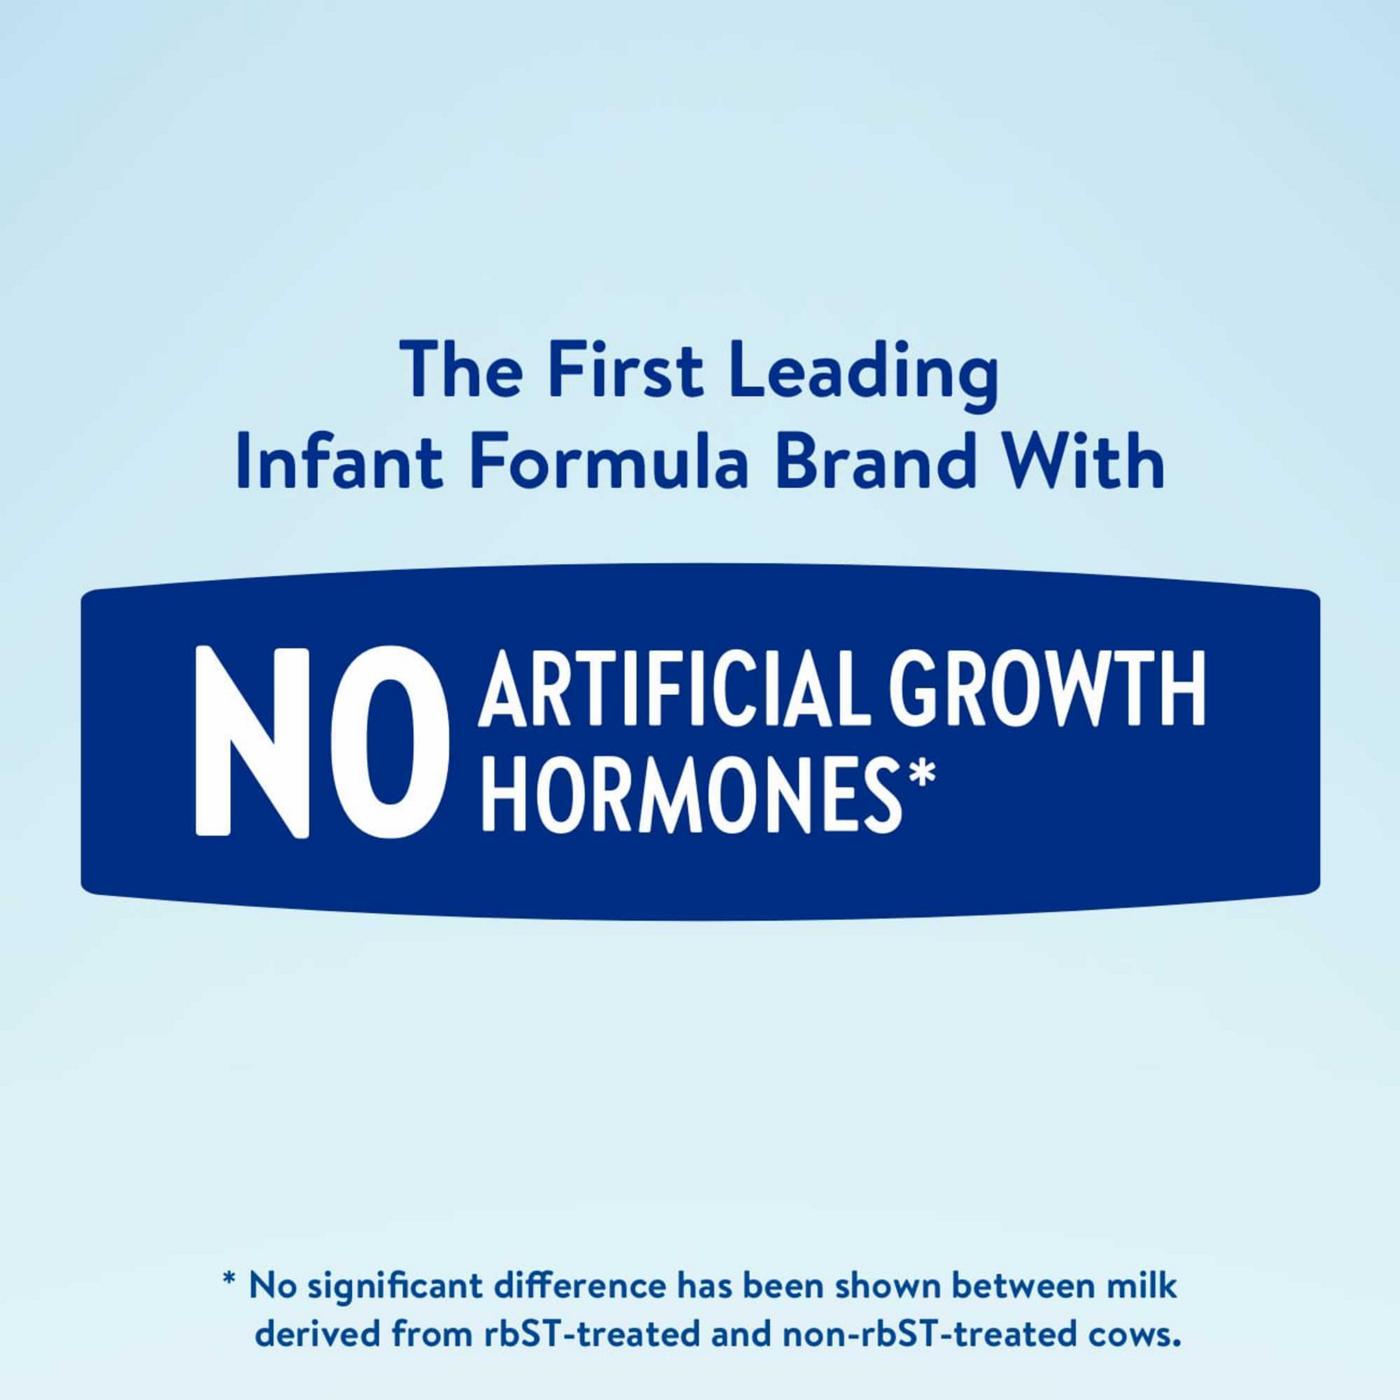 Similac Advance Milk-Based Powder Infant Formula with Iron; image 6 of 10